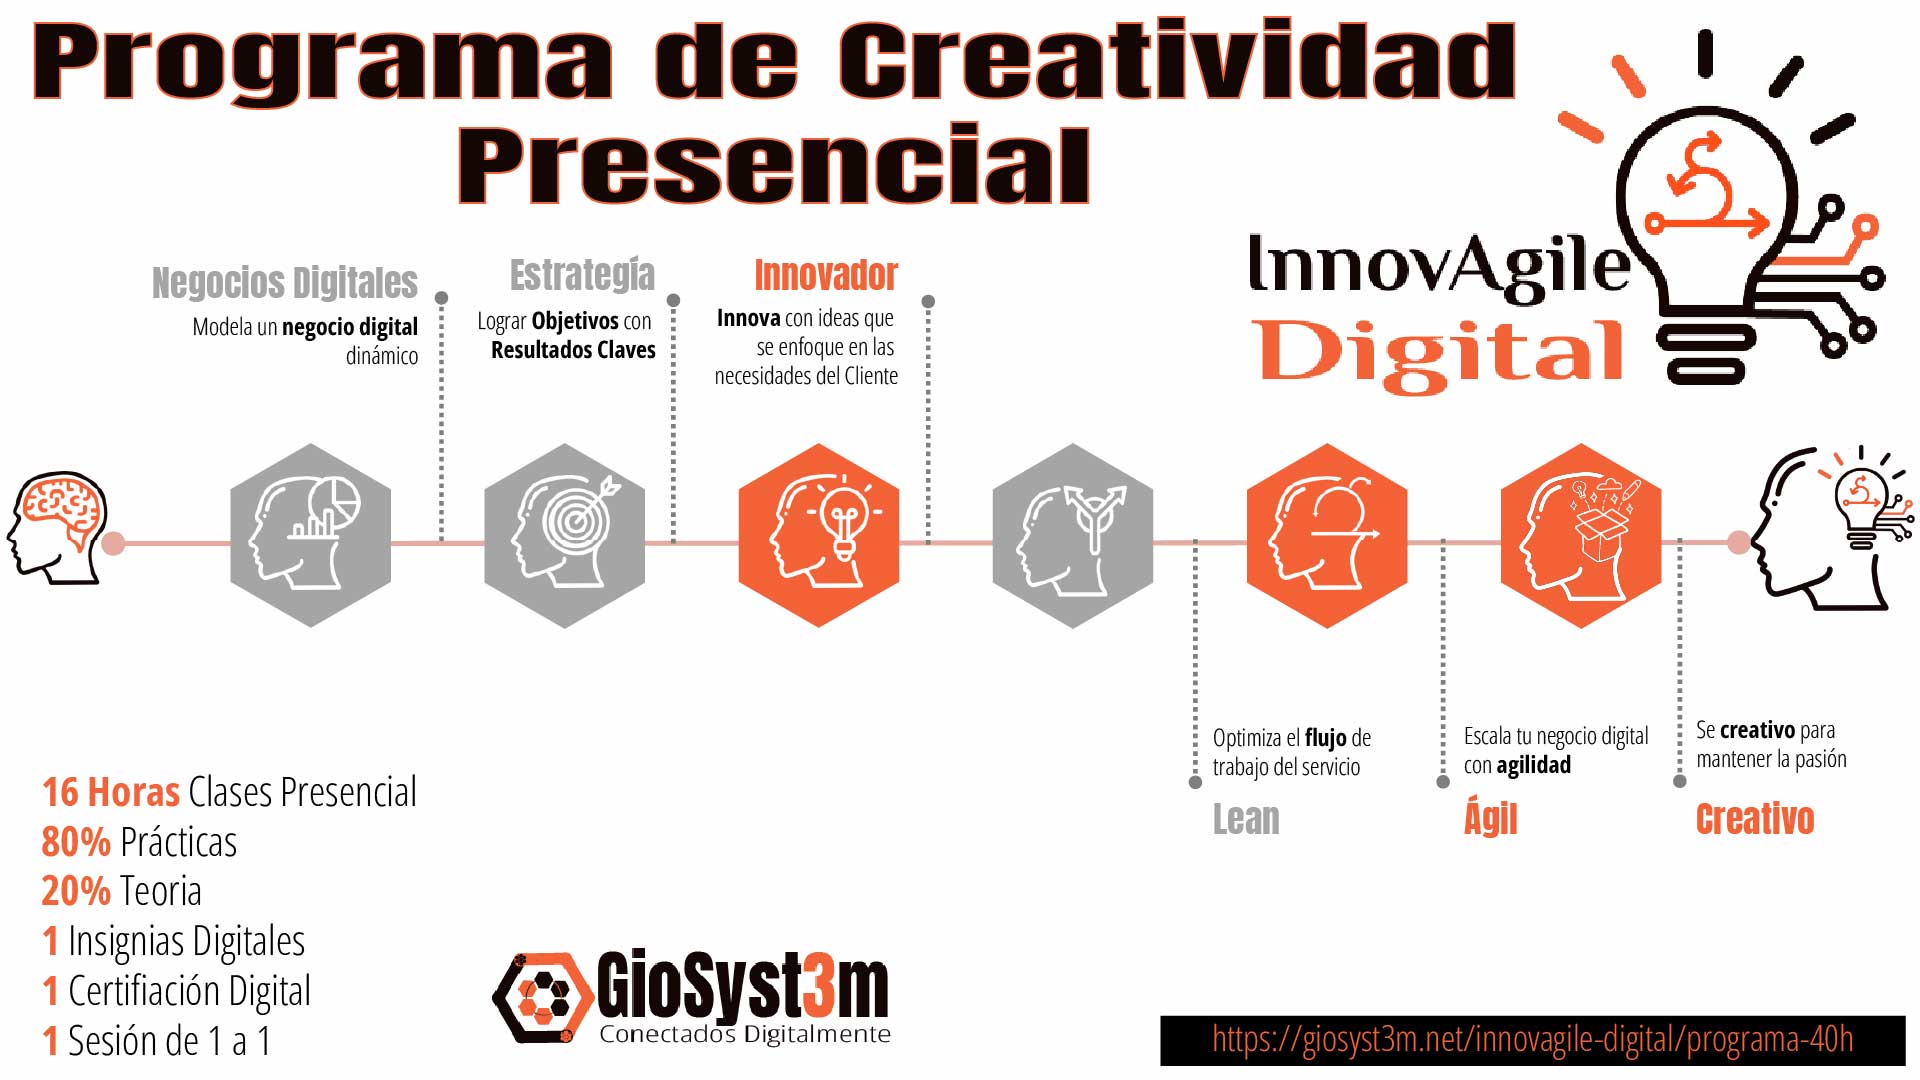 Programa de Creatividad Presencial InnovAgile Digital - GioSyst3m